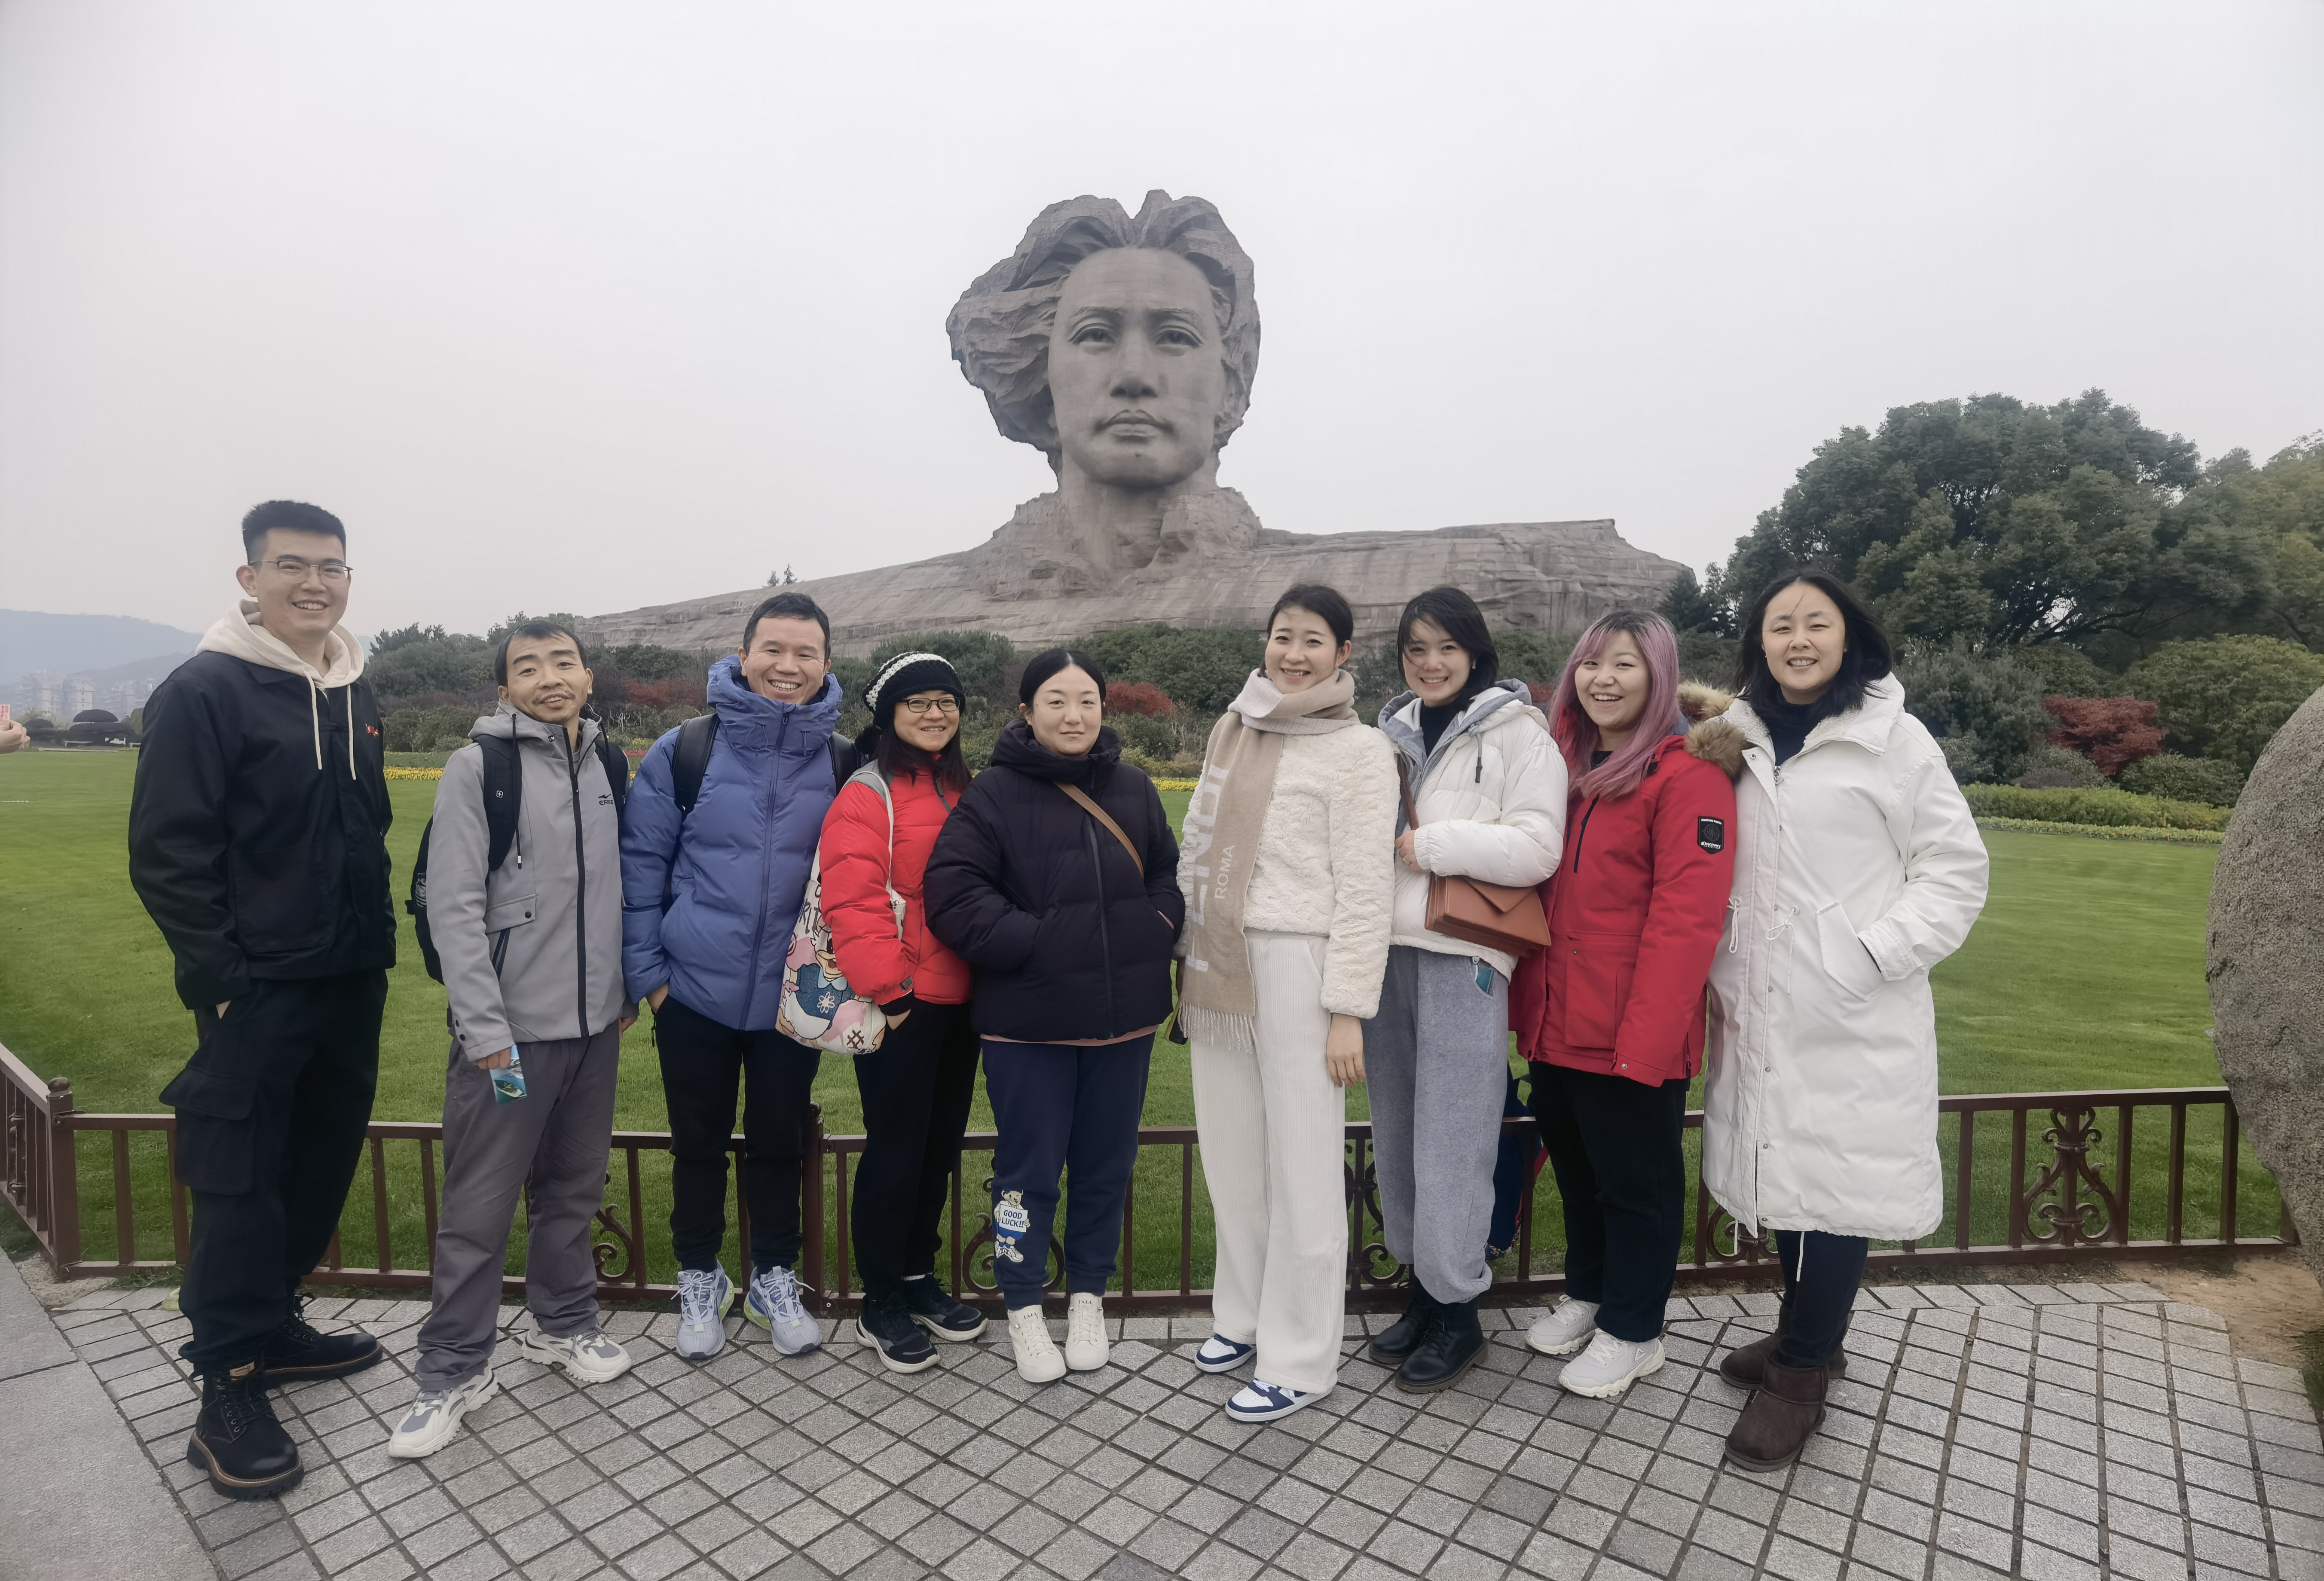 Team Building putovanje Chiswear-a u Changsha je uspješno završeno